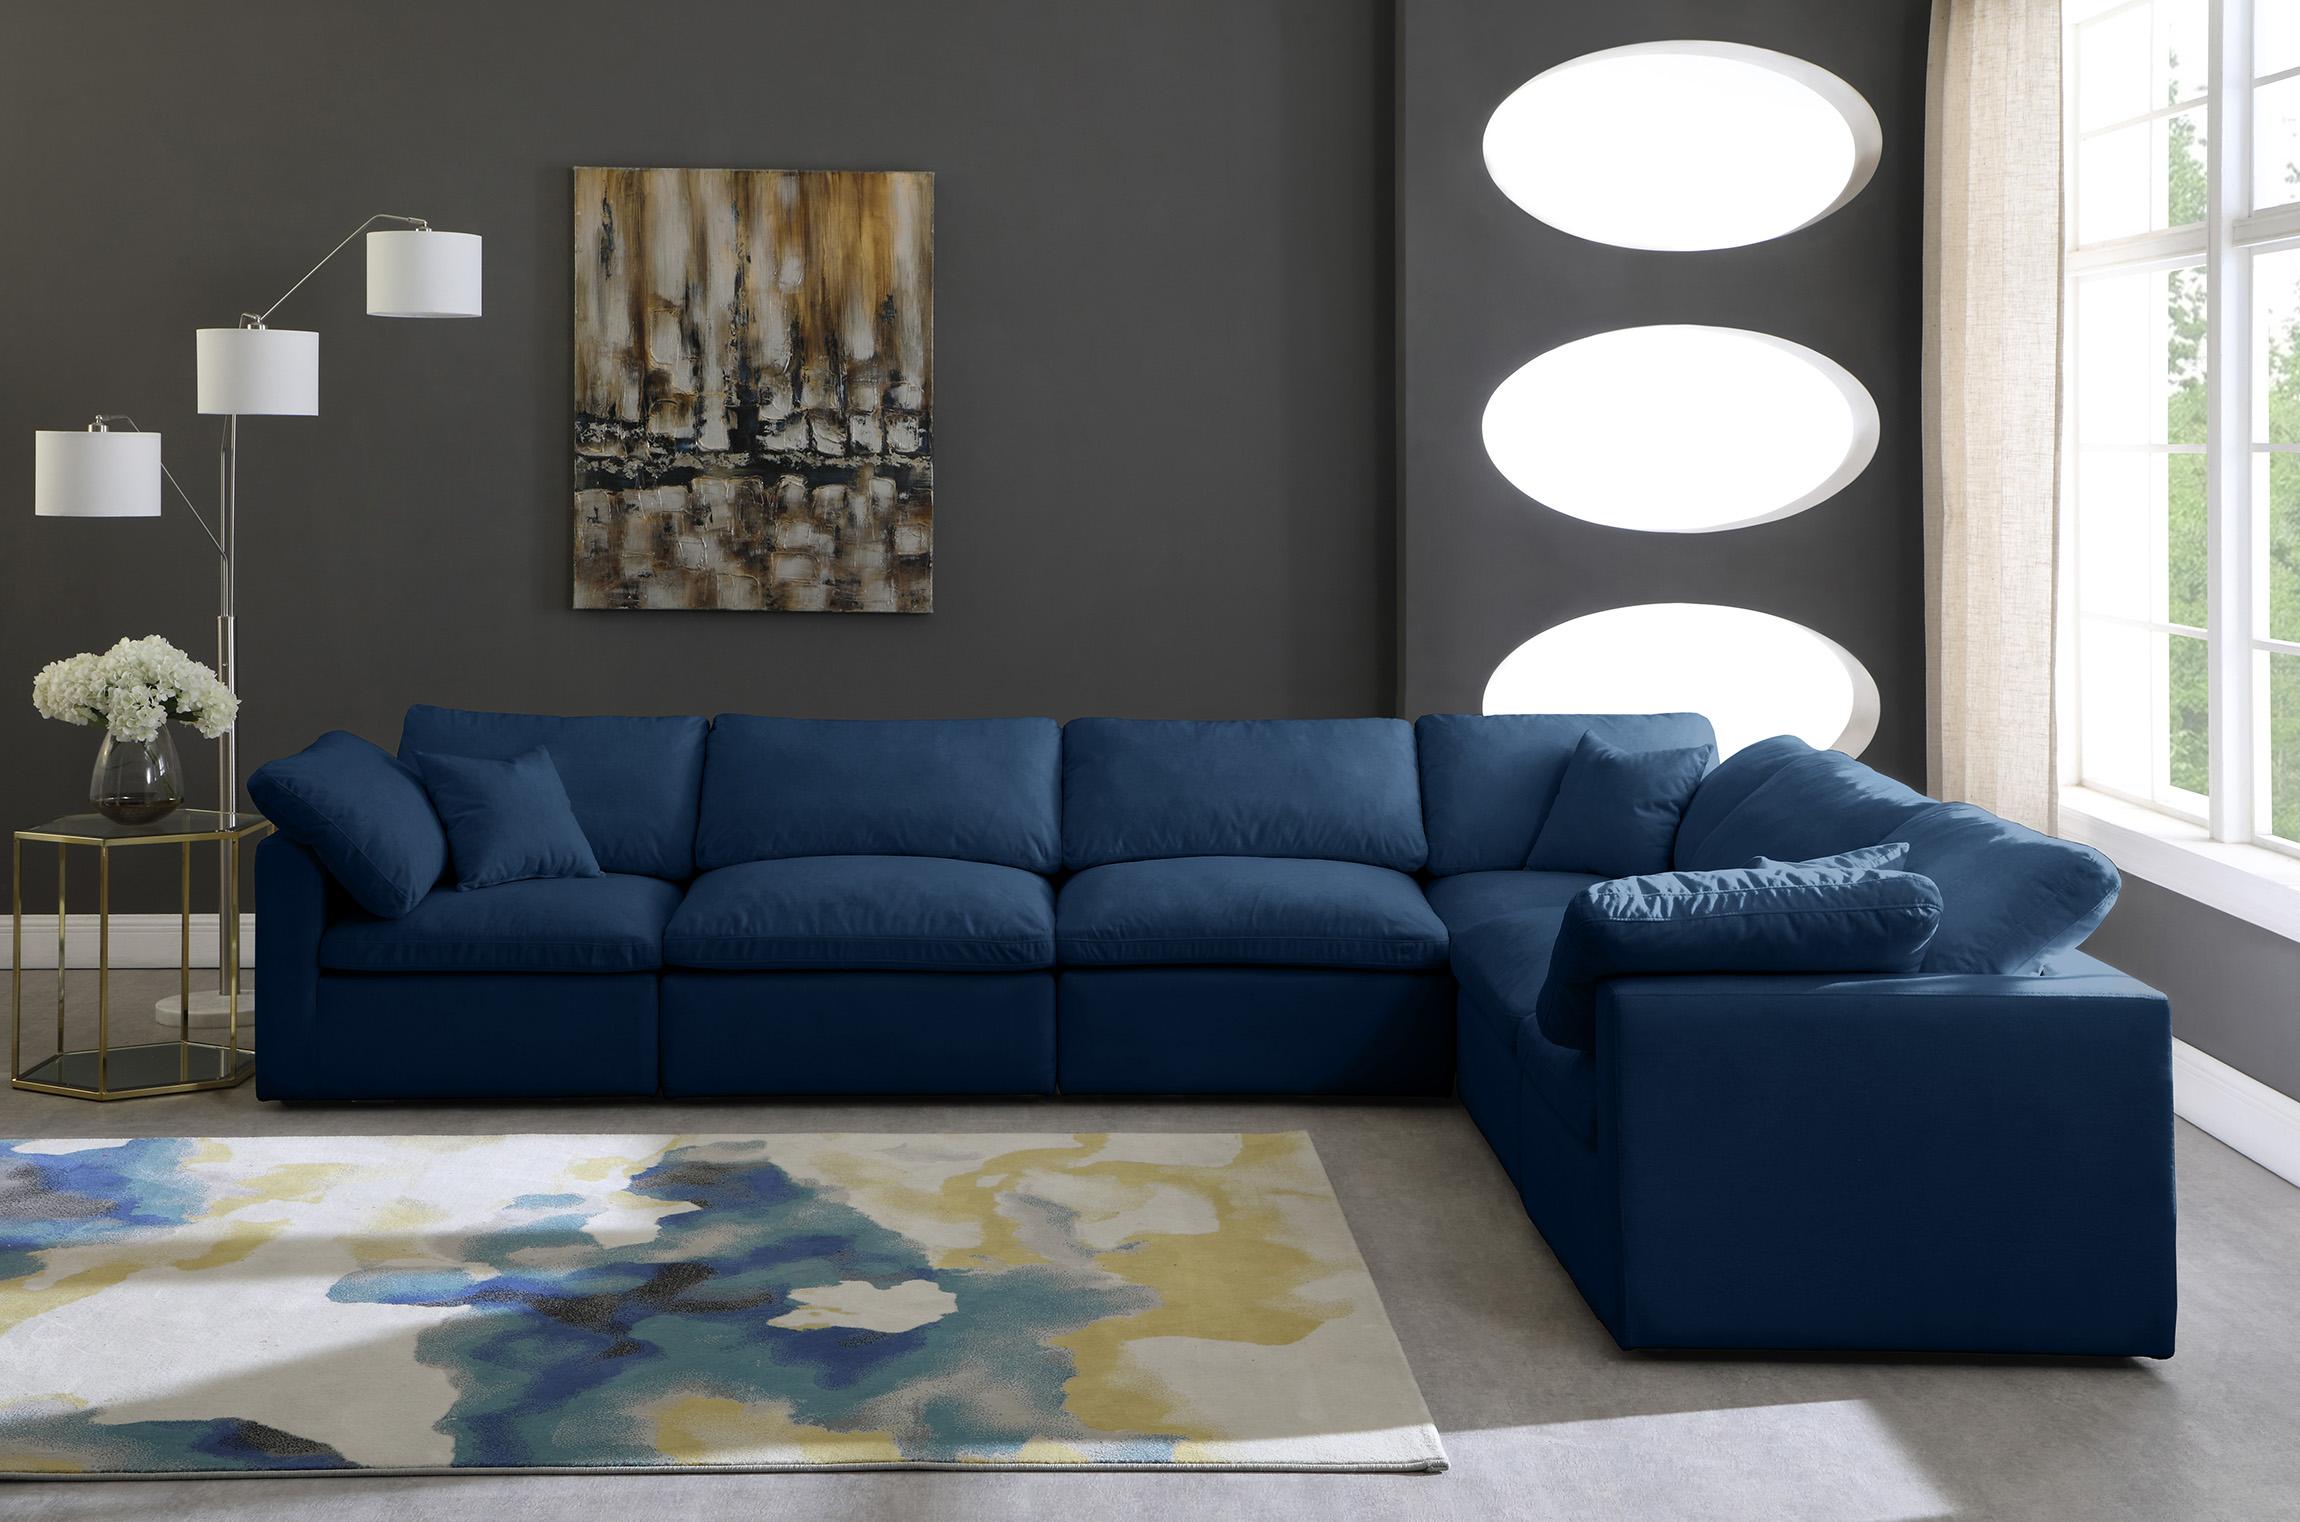 

        
Meridian Furniture 602Navy-Sec6A Modular Sectional Sofa Navy Fabric 753359805948
